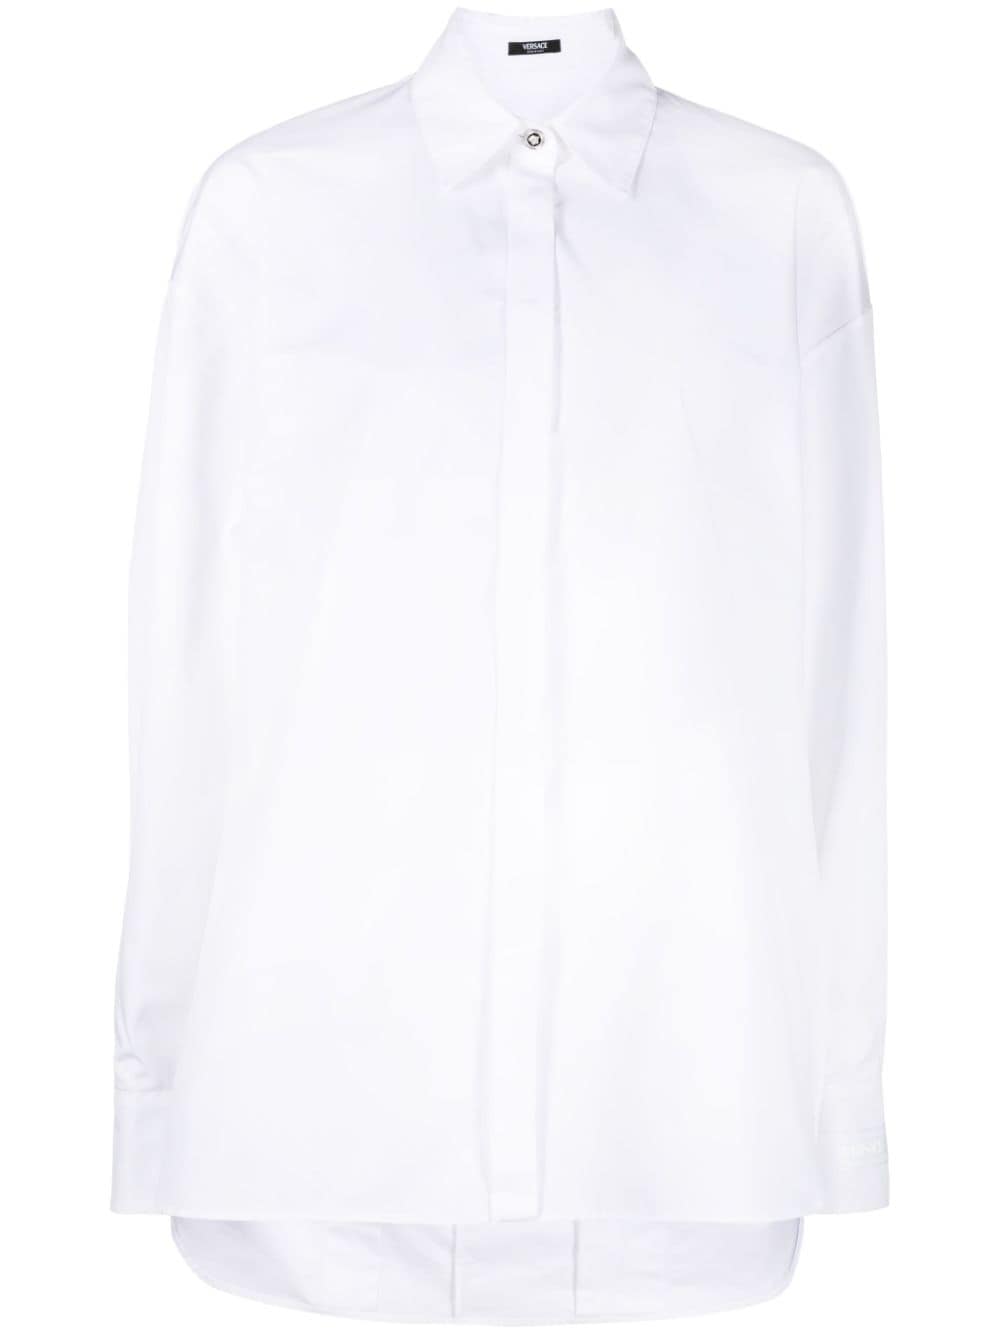 Button-up cotton shirt